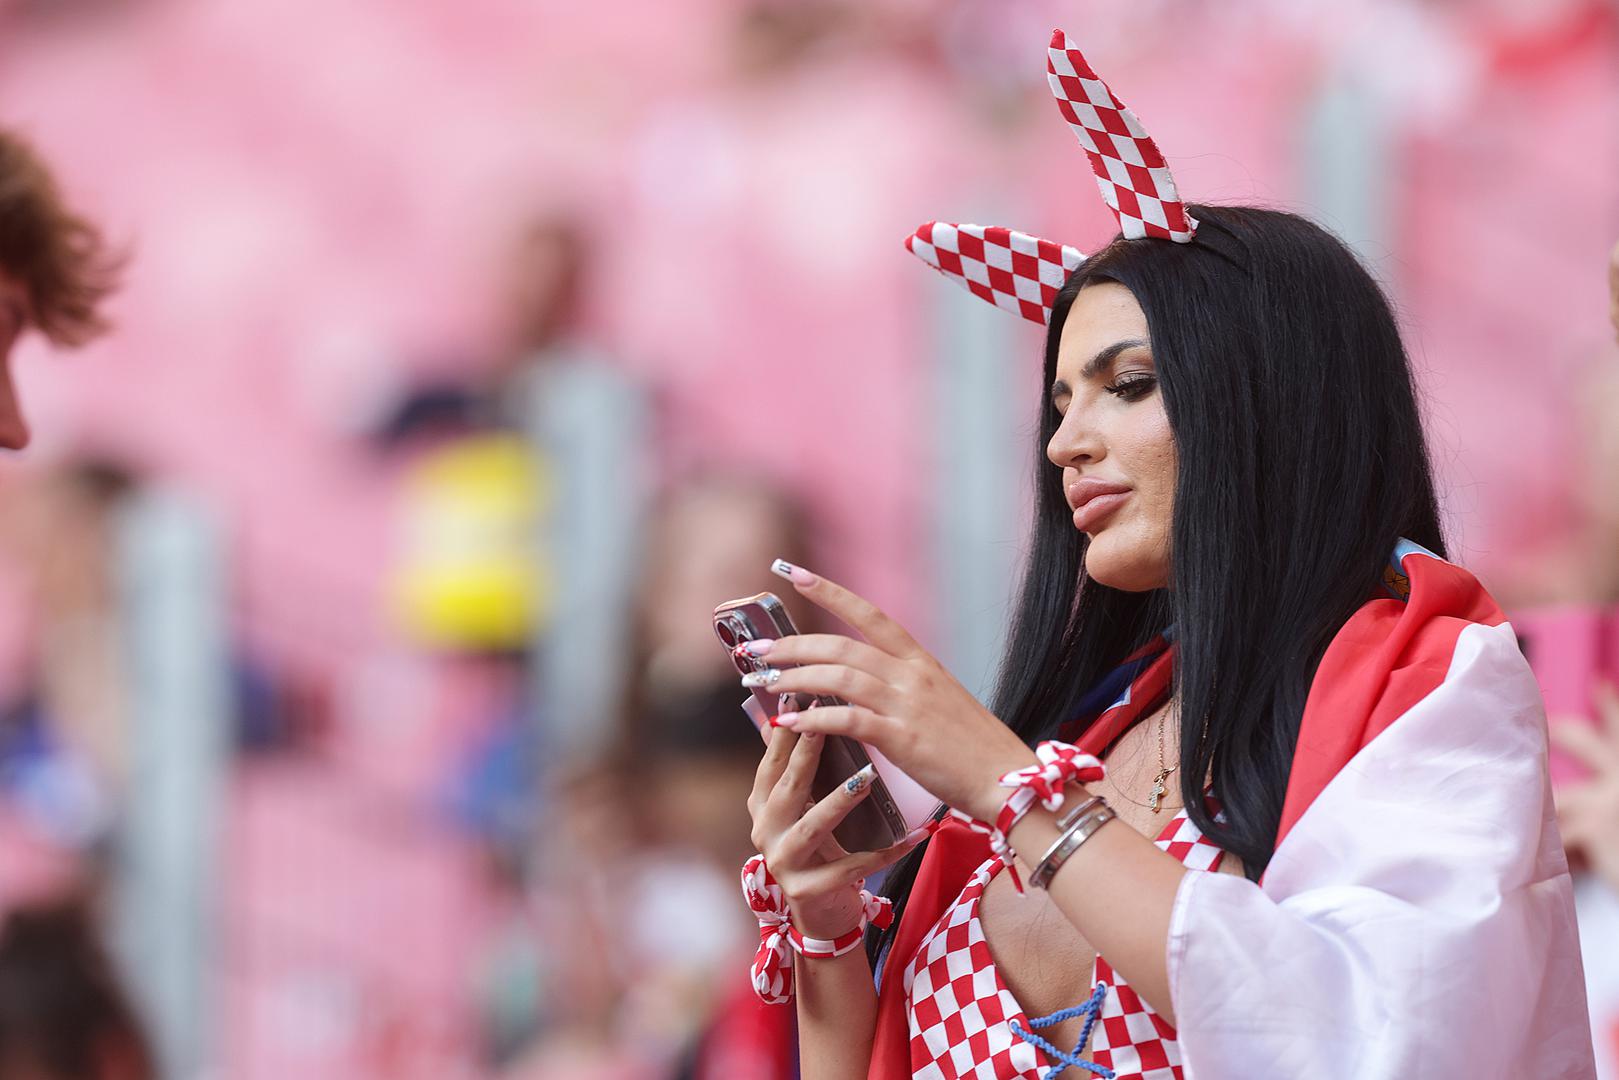 Hrvatska navijačica s njemačkom adresom, Magdalena Keškić, jedna je u nizu ljepotica koje bodre hrvatsku nogometnu reprezentaciju na Europskom prvenstvu u Njemačkoj.